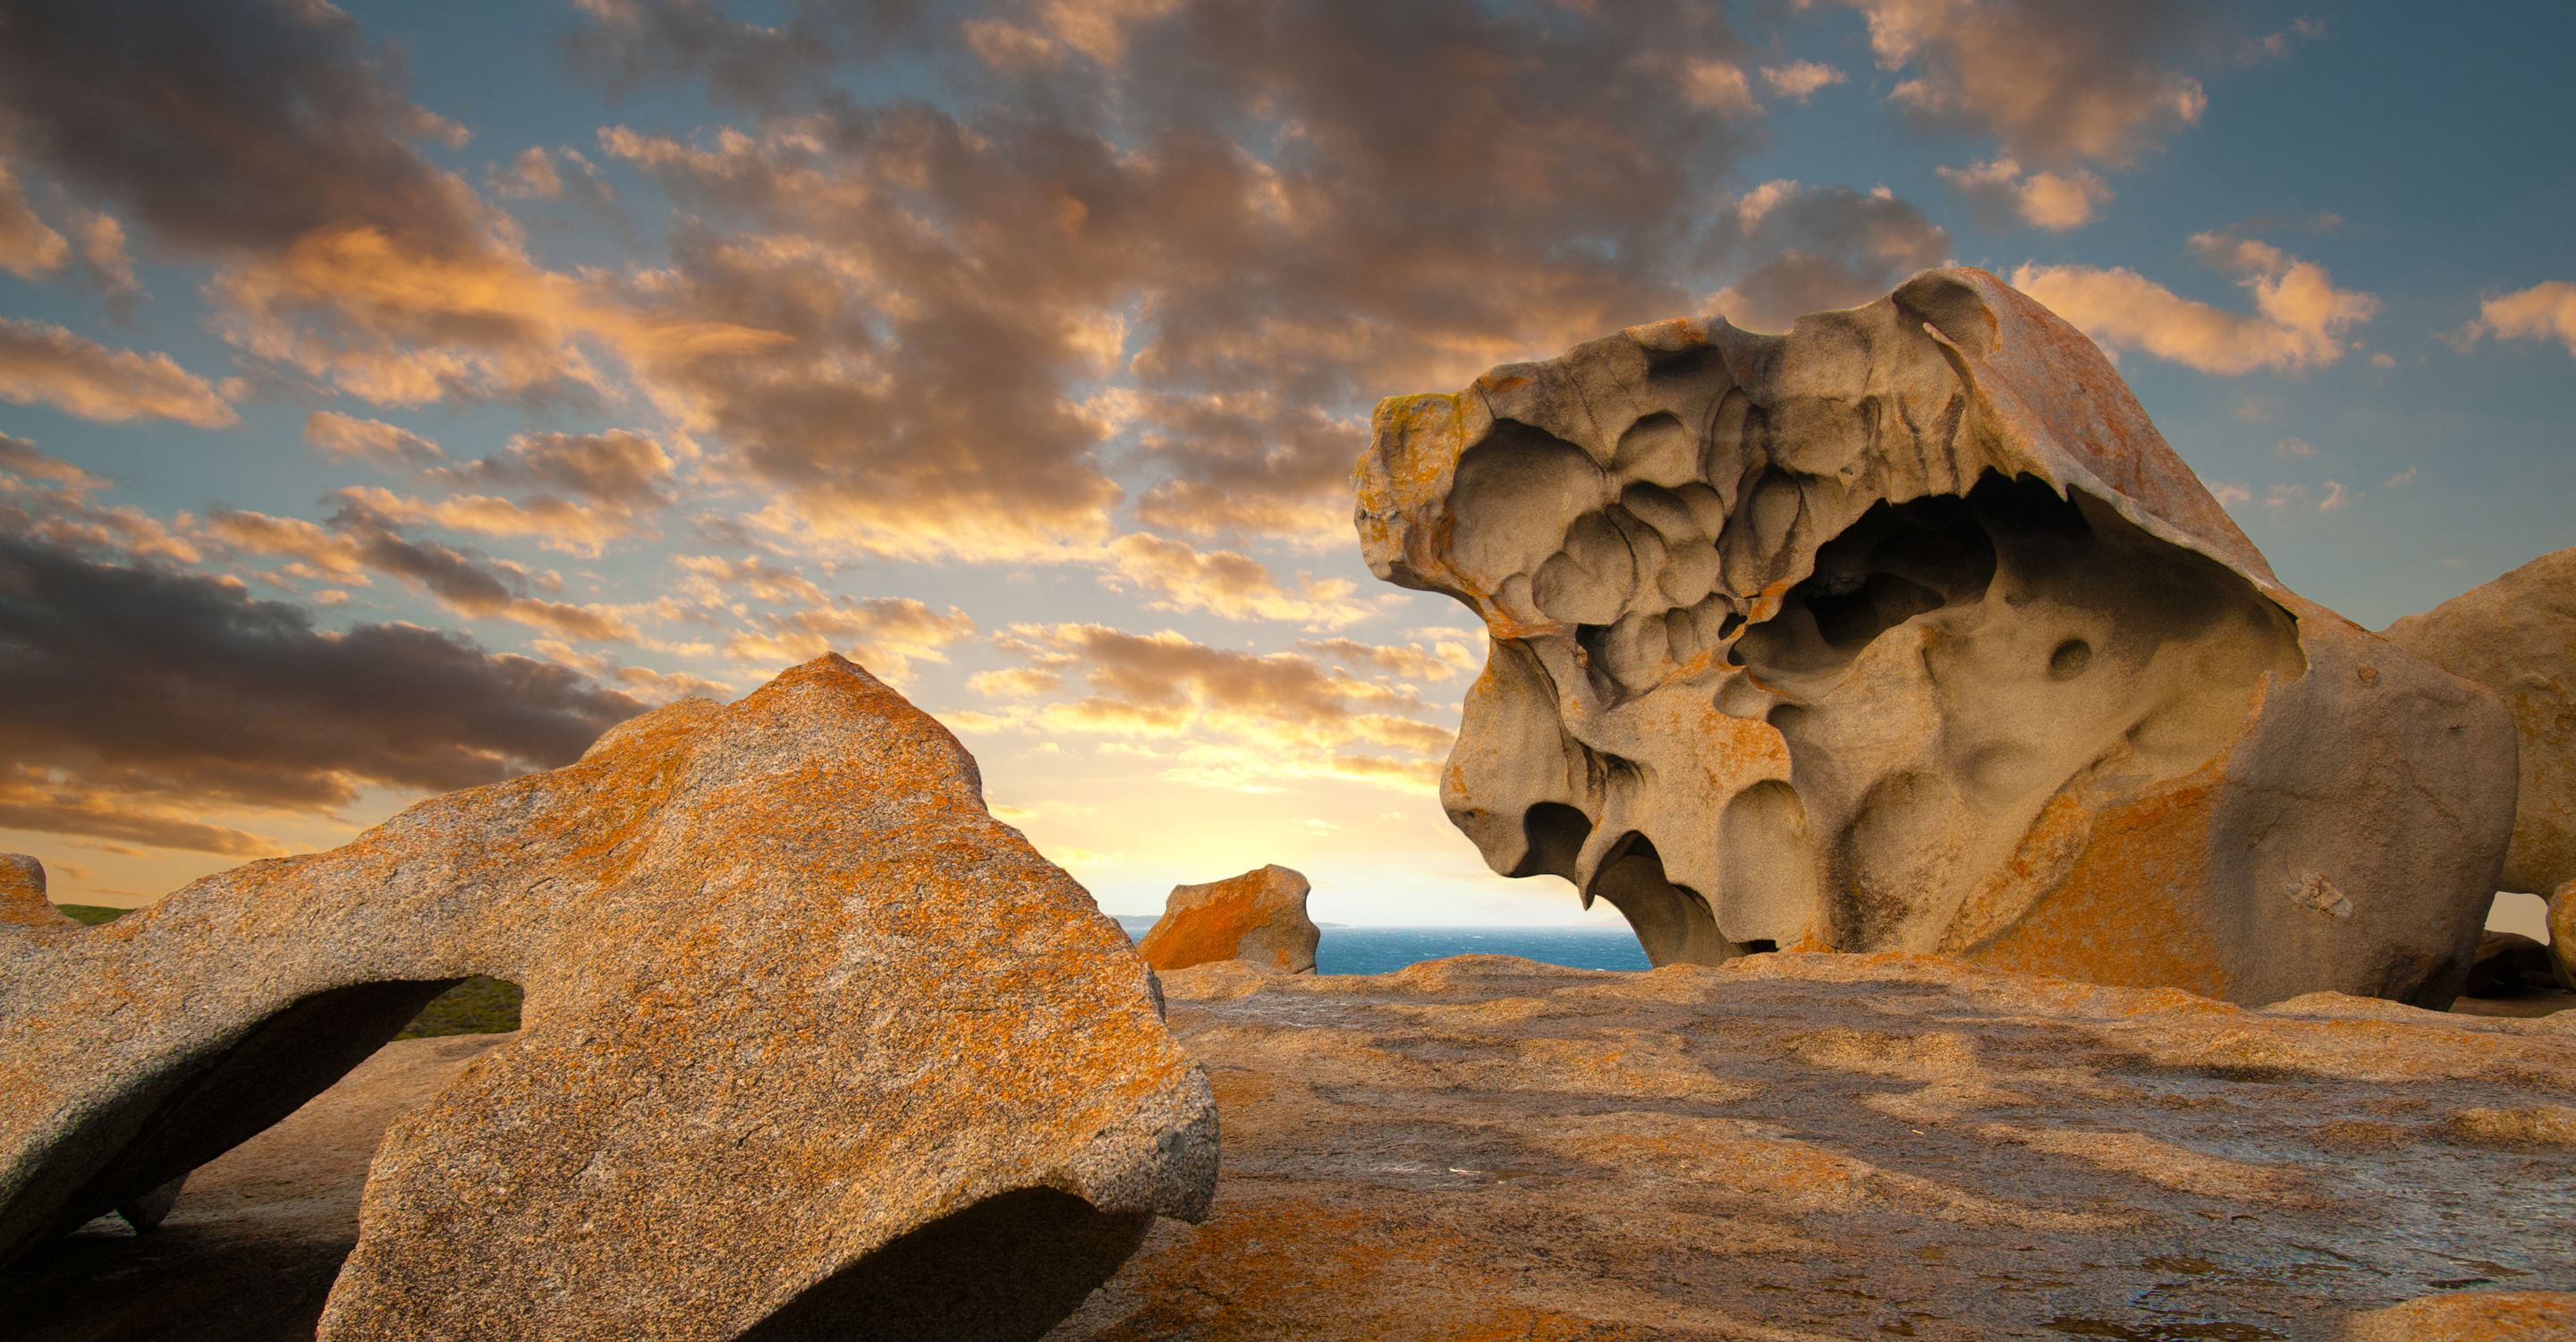 Rock formations on the Kangaroo Island coastline, Australia